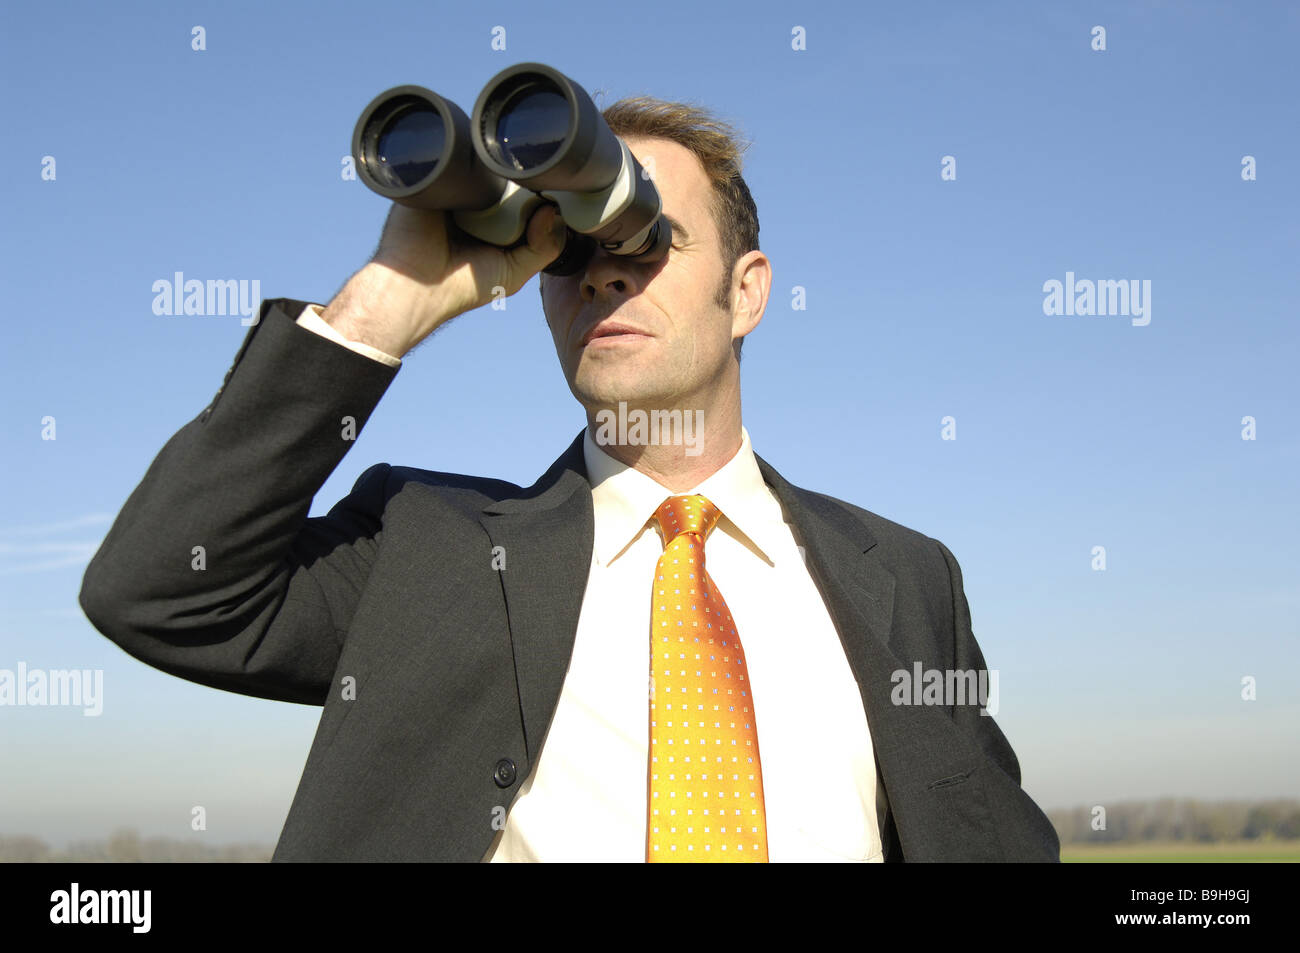 Geschäftsmann Blick Fernglas semi-Portrait-Serie Menschen Mann Fernglas  Beobachtung Beobachter Voyeur Voyeurismus Pressen Stockfotografie - Alamy